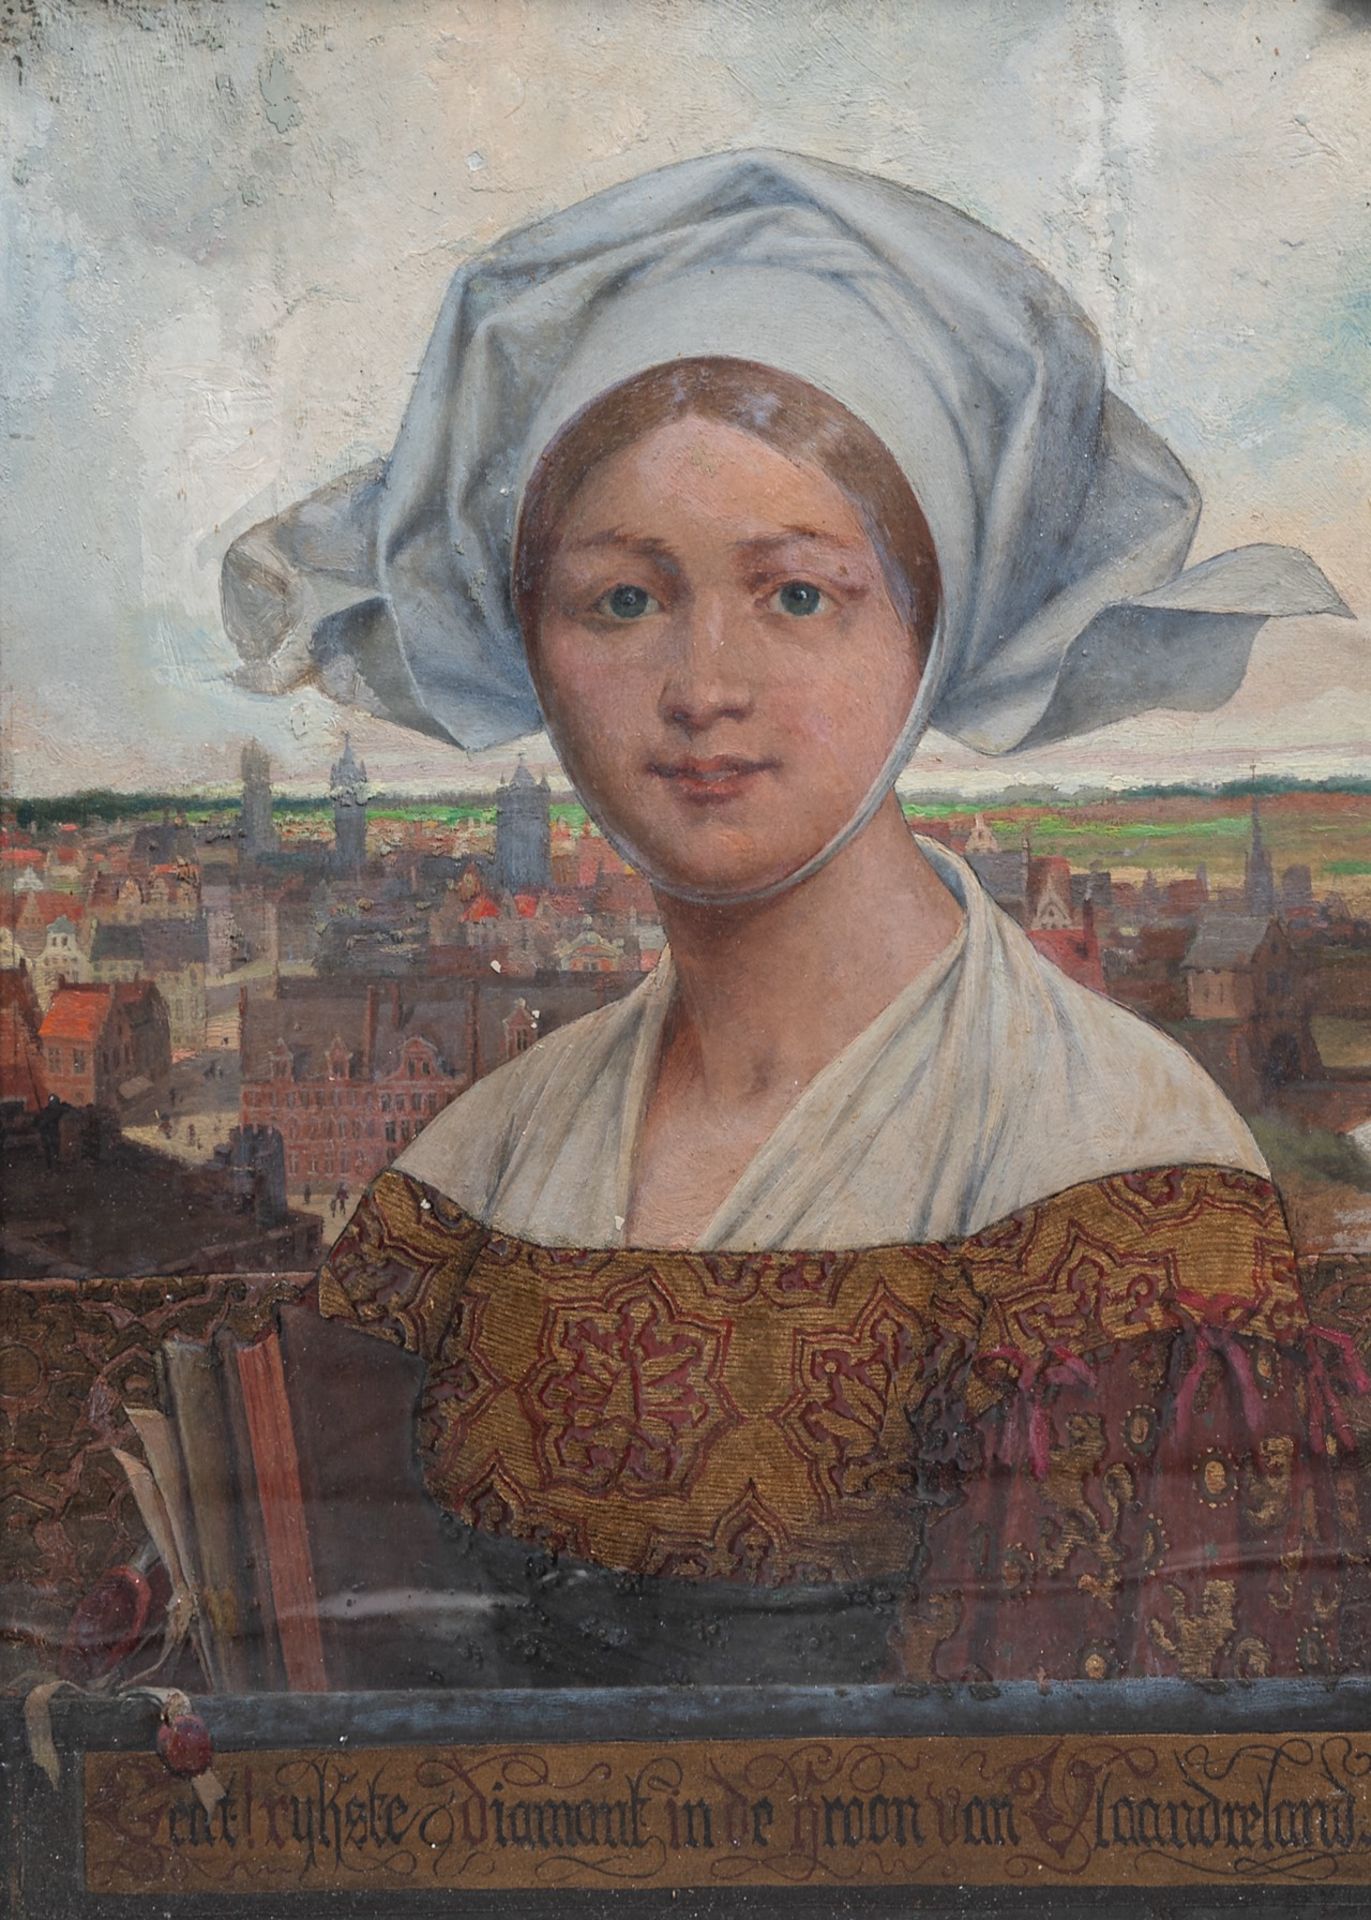 Theophile Marie Francoise Lybaert (1848-1927), 'Gent, Rijkste Diamant in de kroon van Vlaanderen', c